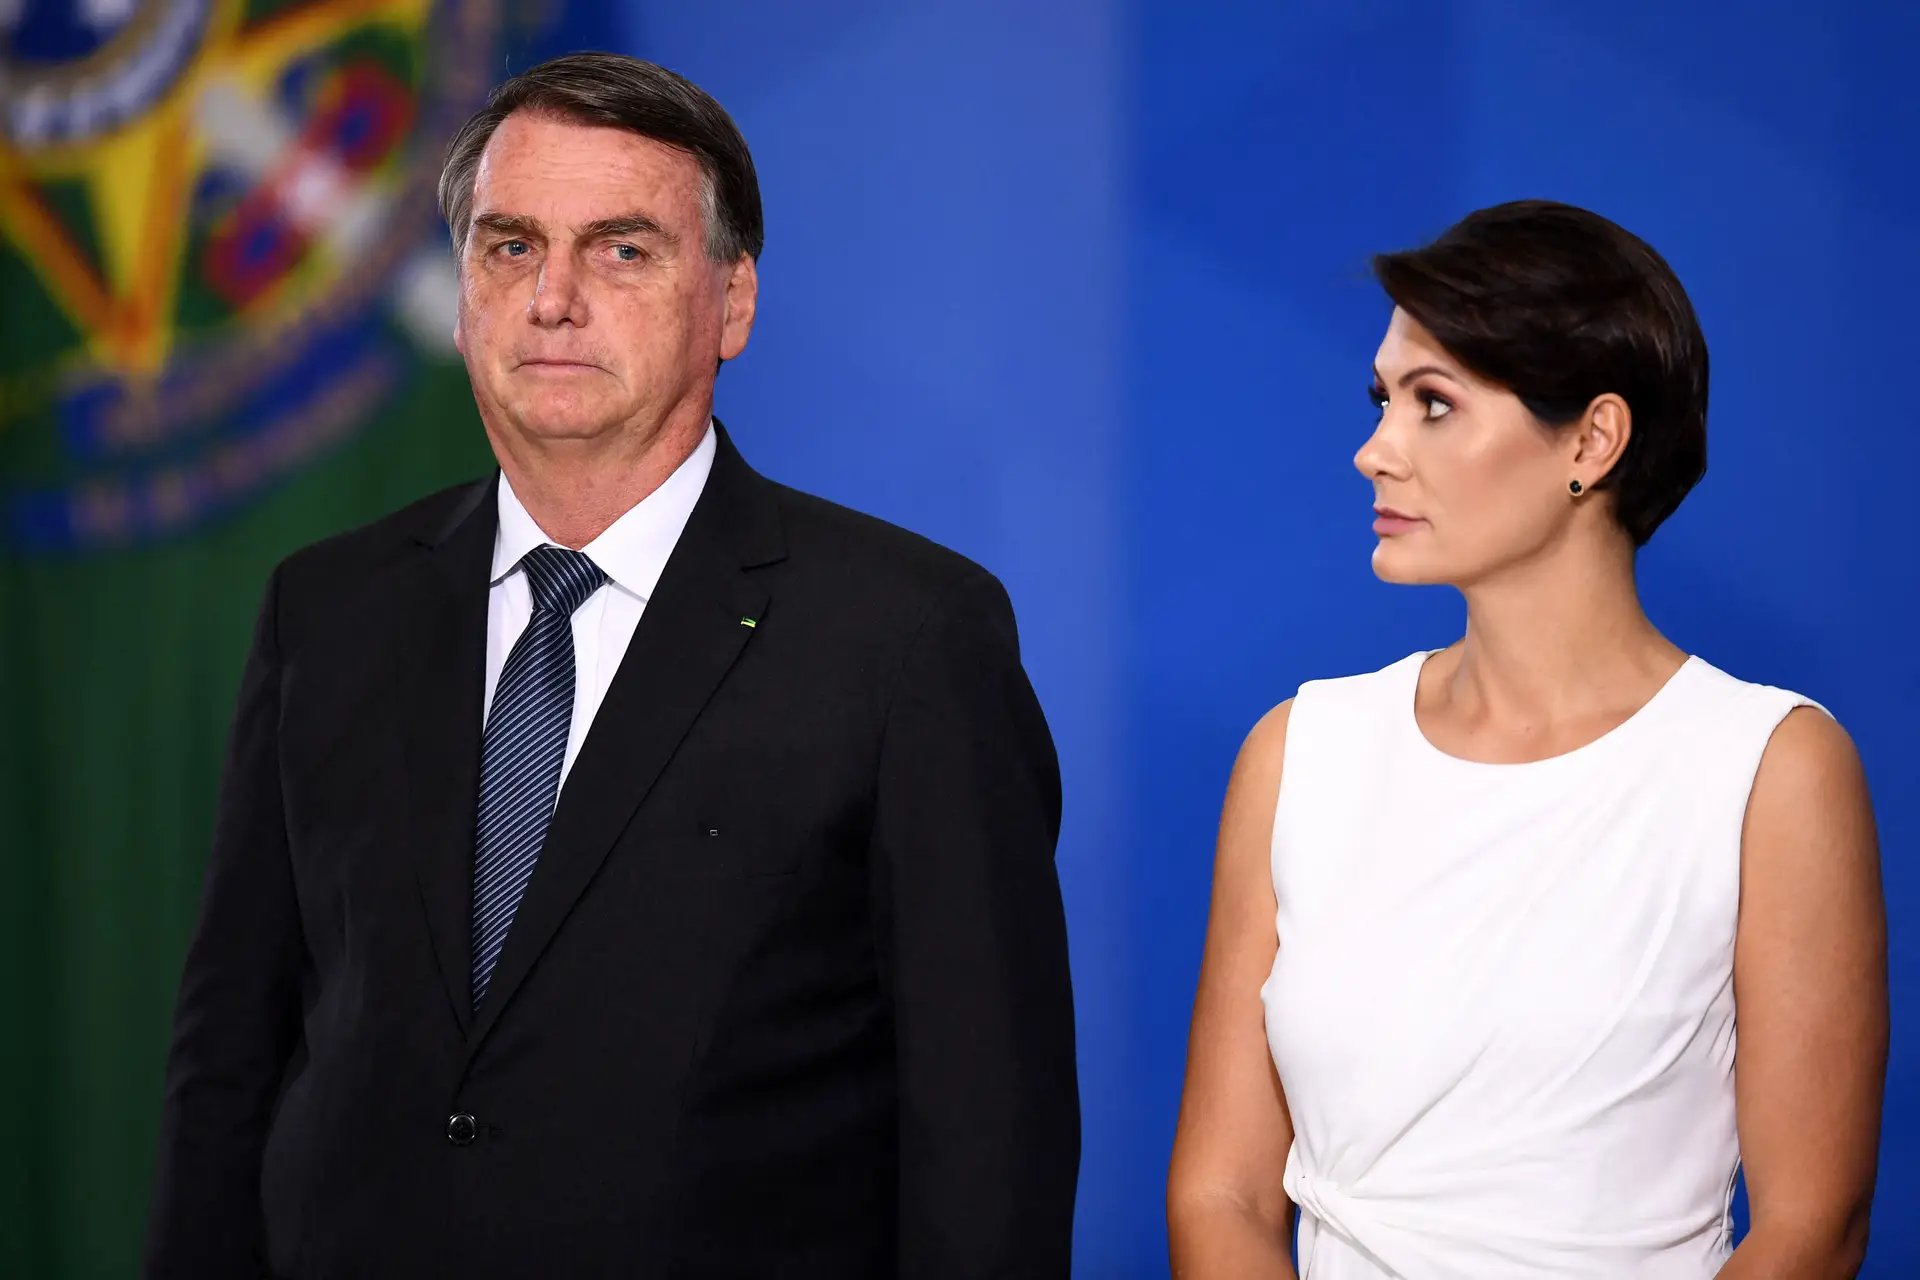 Joias para família a Bolsonaro: como o episódio pode colocar em